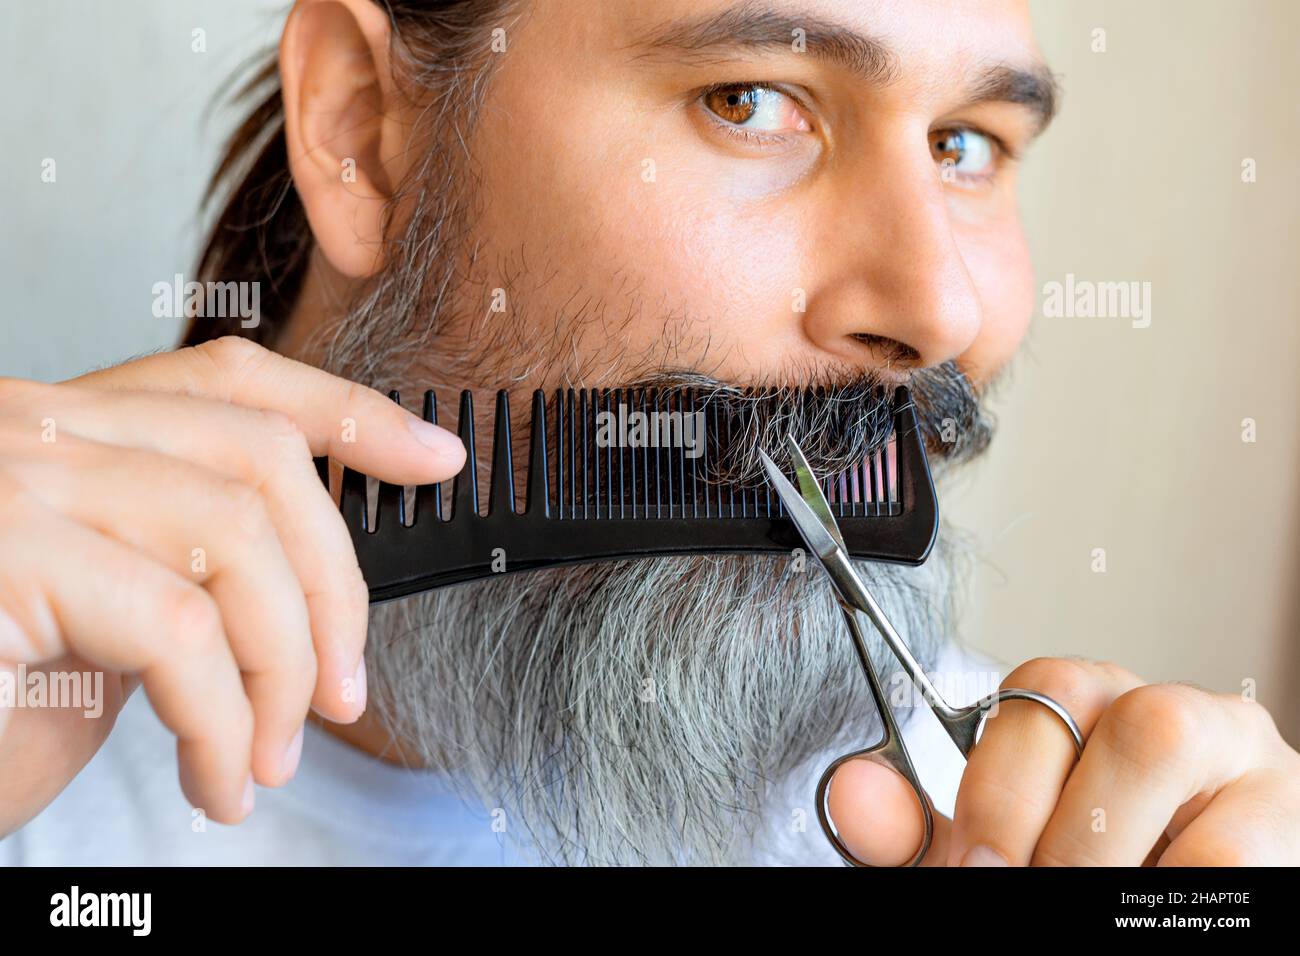 L'uomo caucasico di mezza età tagliò i baffi. Un uomo con baffi grigi taglia i propri baffi utilizzando un pettine e delle forbici. Messa a fuoco selettiva. Foto Stock